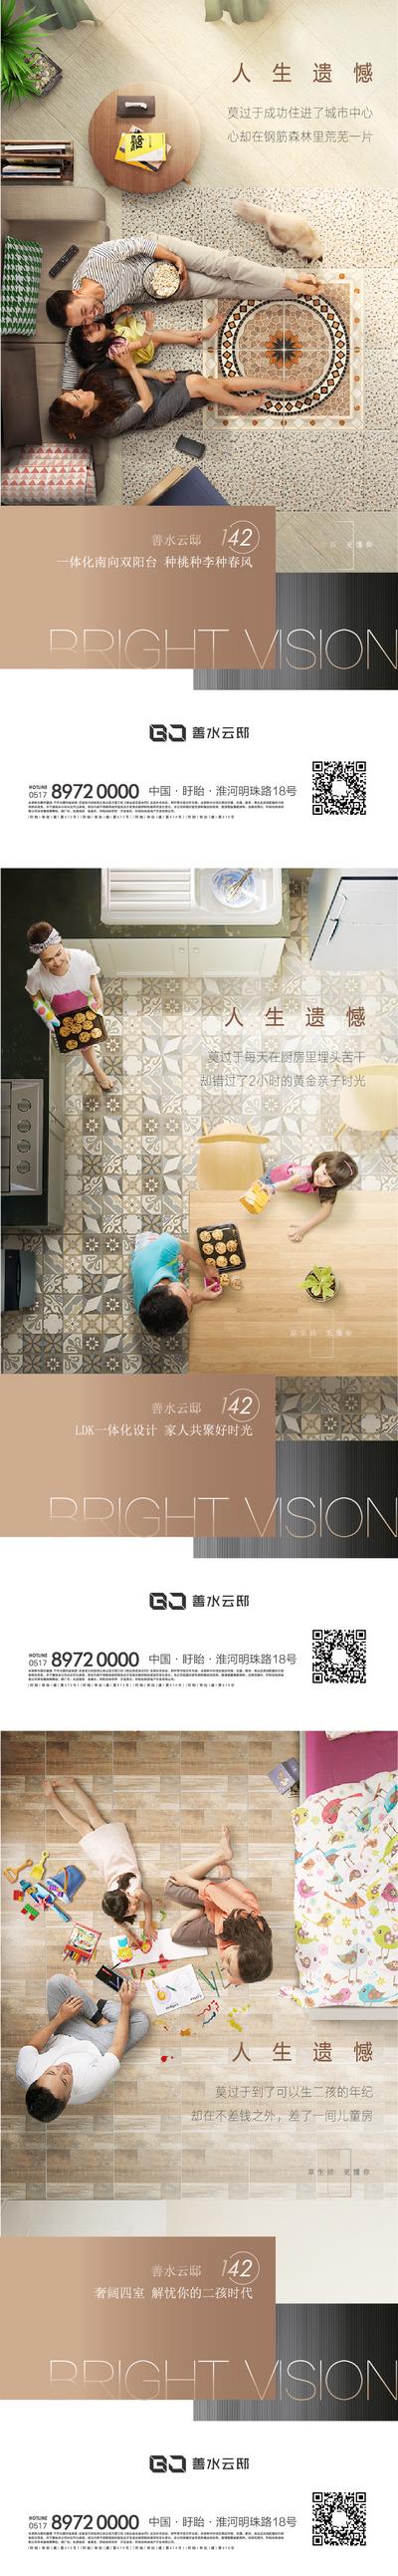 南门网 海报 地产 户型 场景  客厅 厨房 幸福 创意  系列 